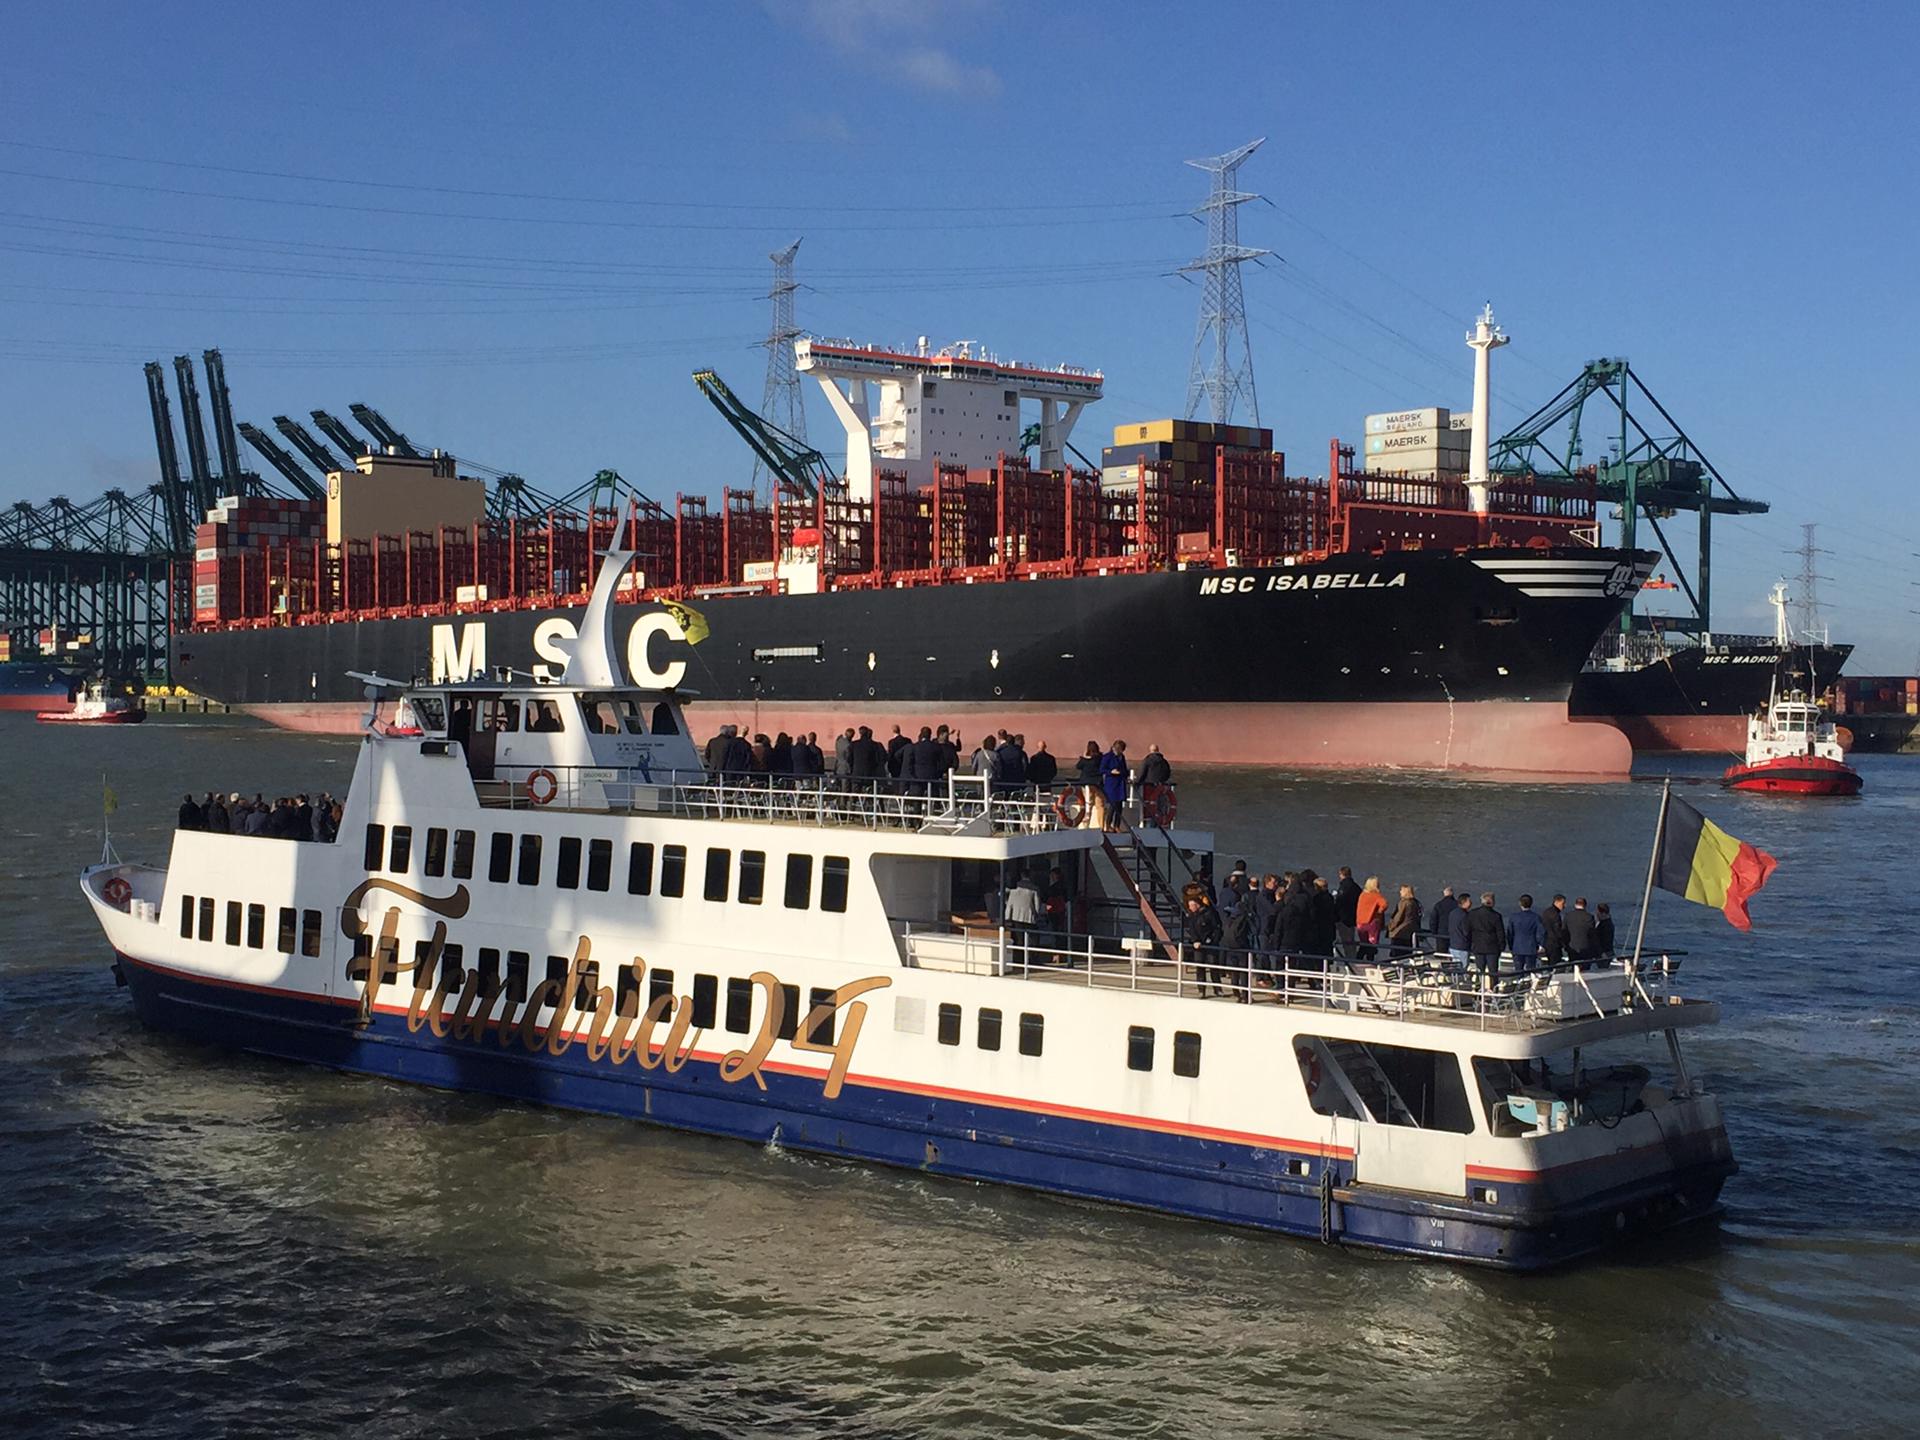 Excursion en bateau: Good morning Antwerp sans petit-déjeuner